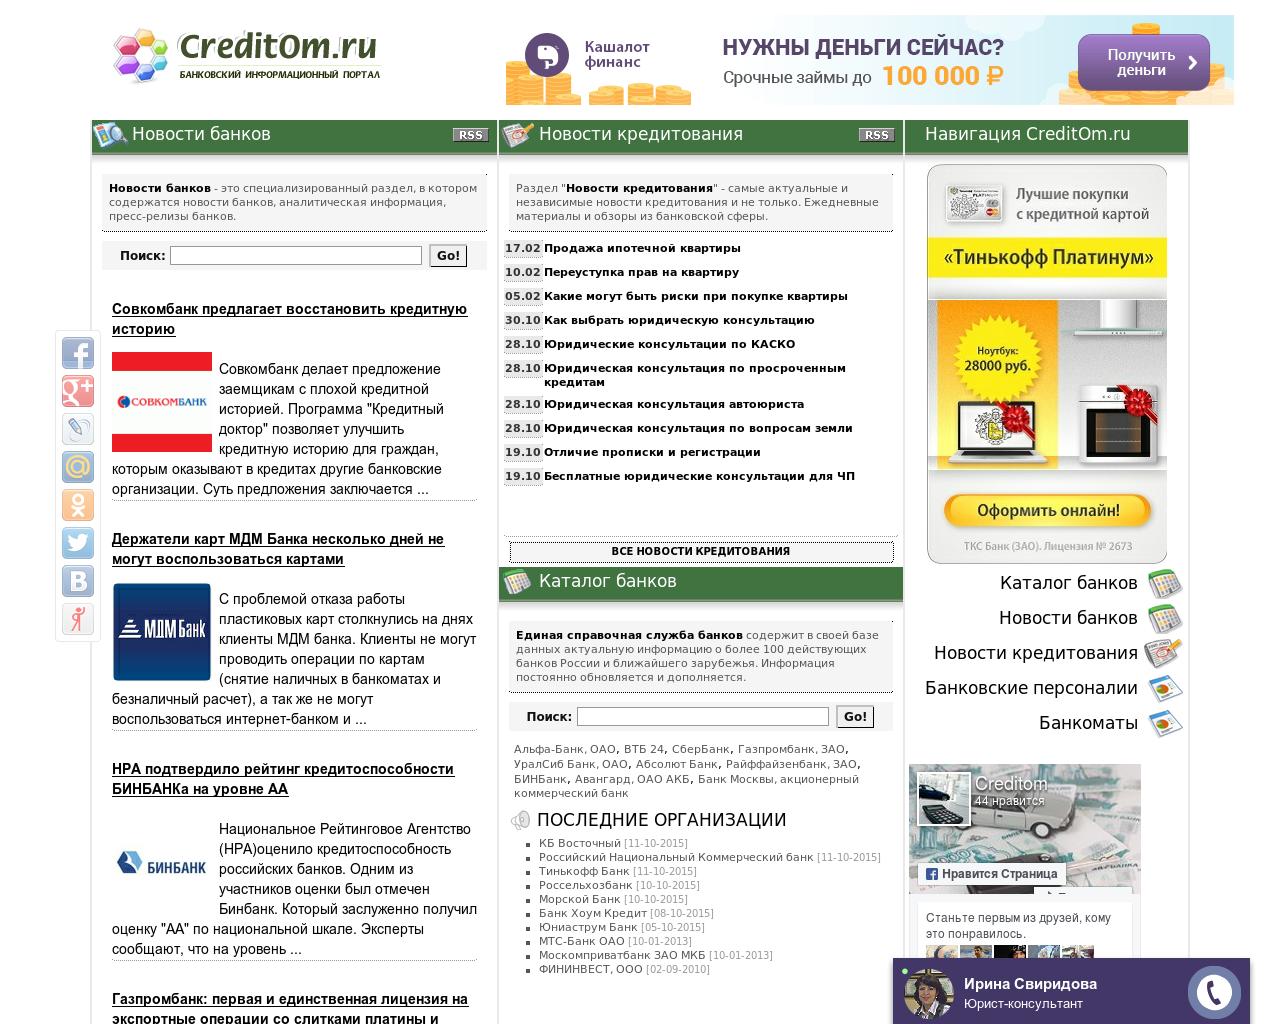 Изображение сайта creditom.ru в разрешении 1280x1024